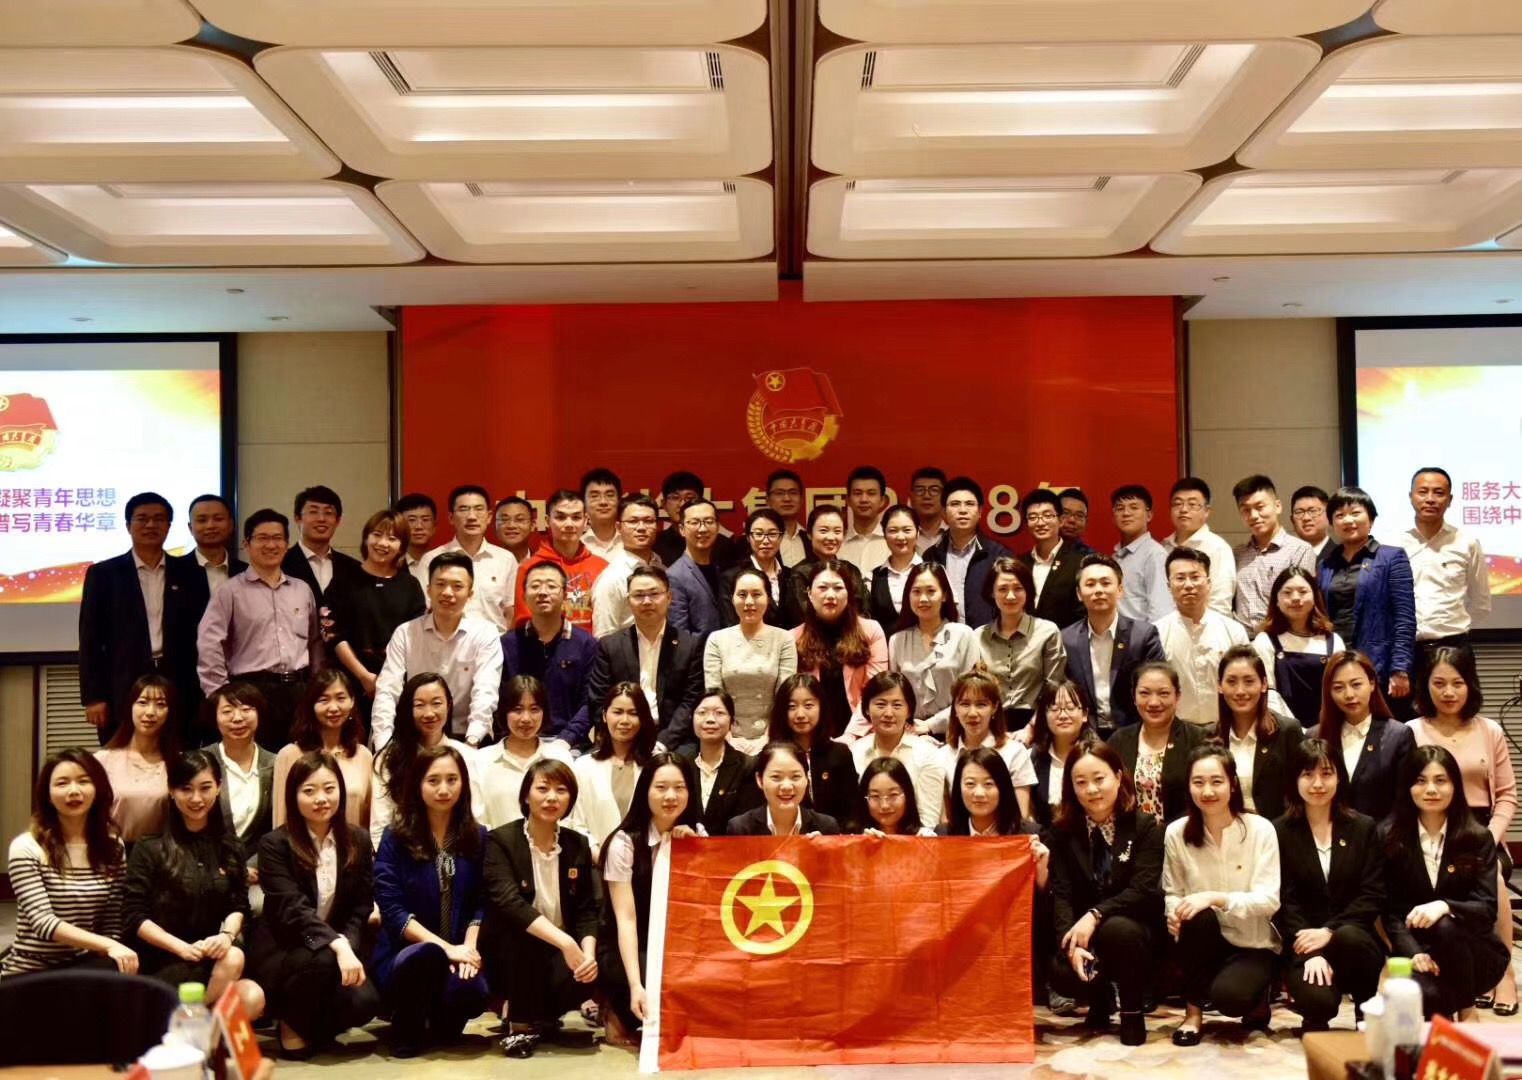 以青春之初心 创一流之光大 中国光大集团2018年团干部培训圆满举办